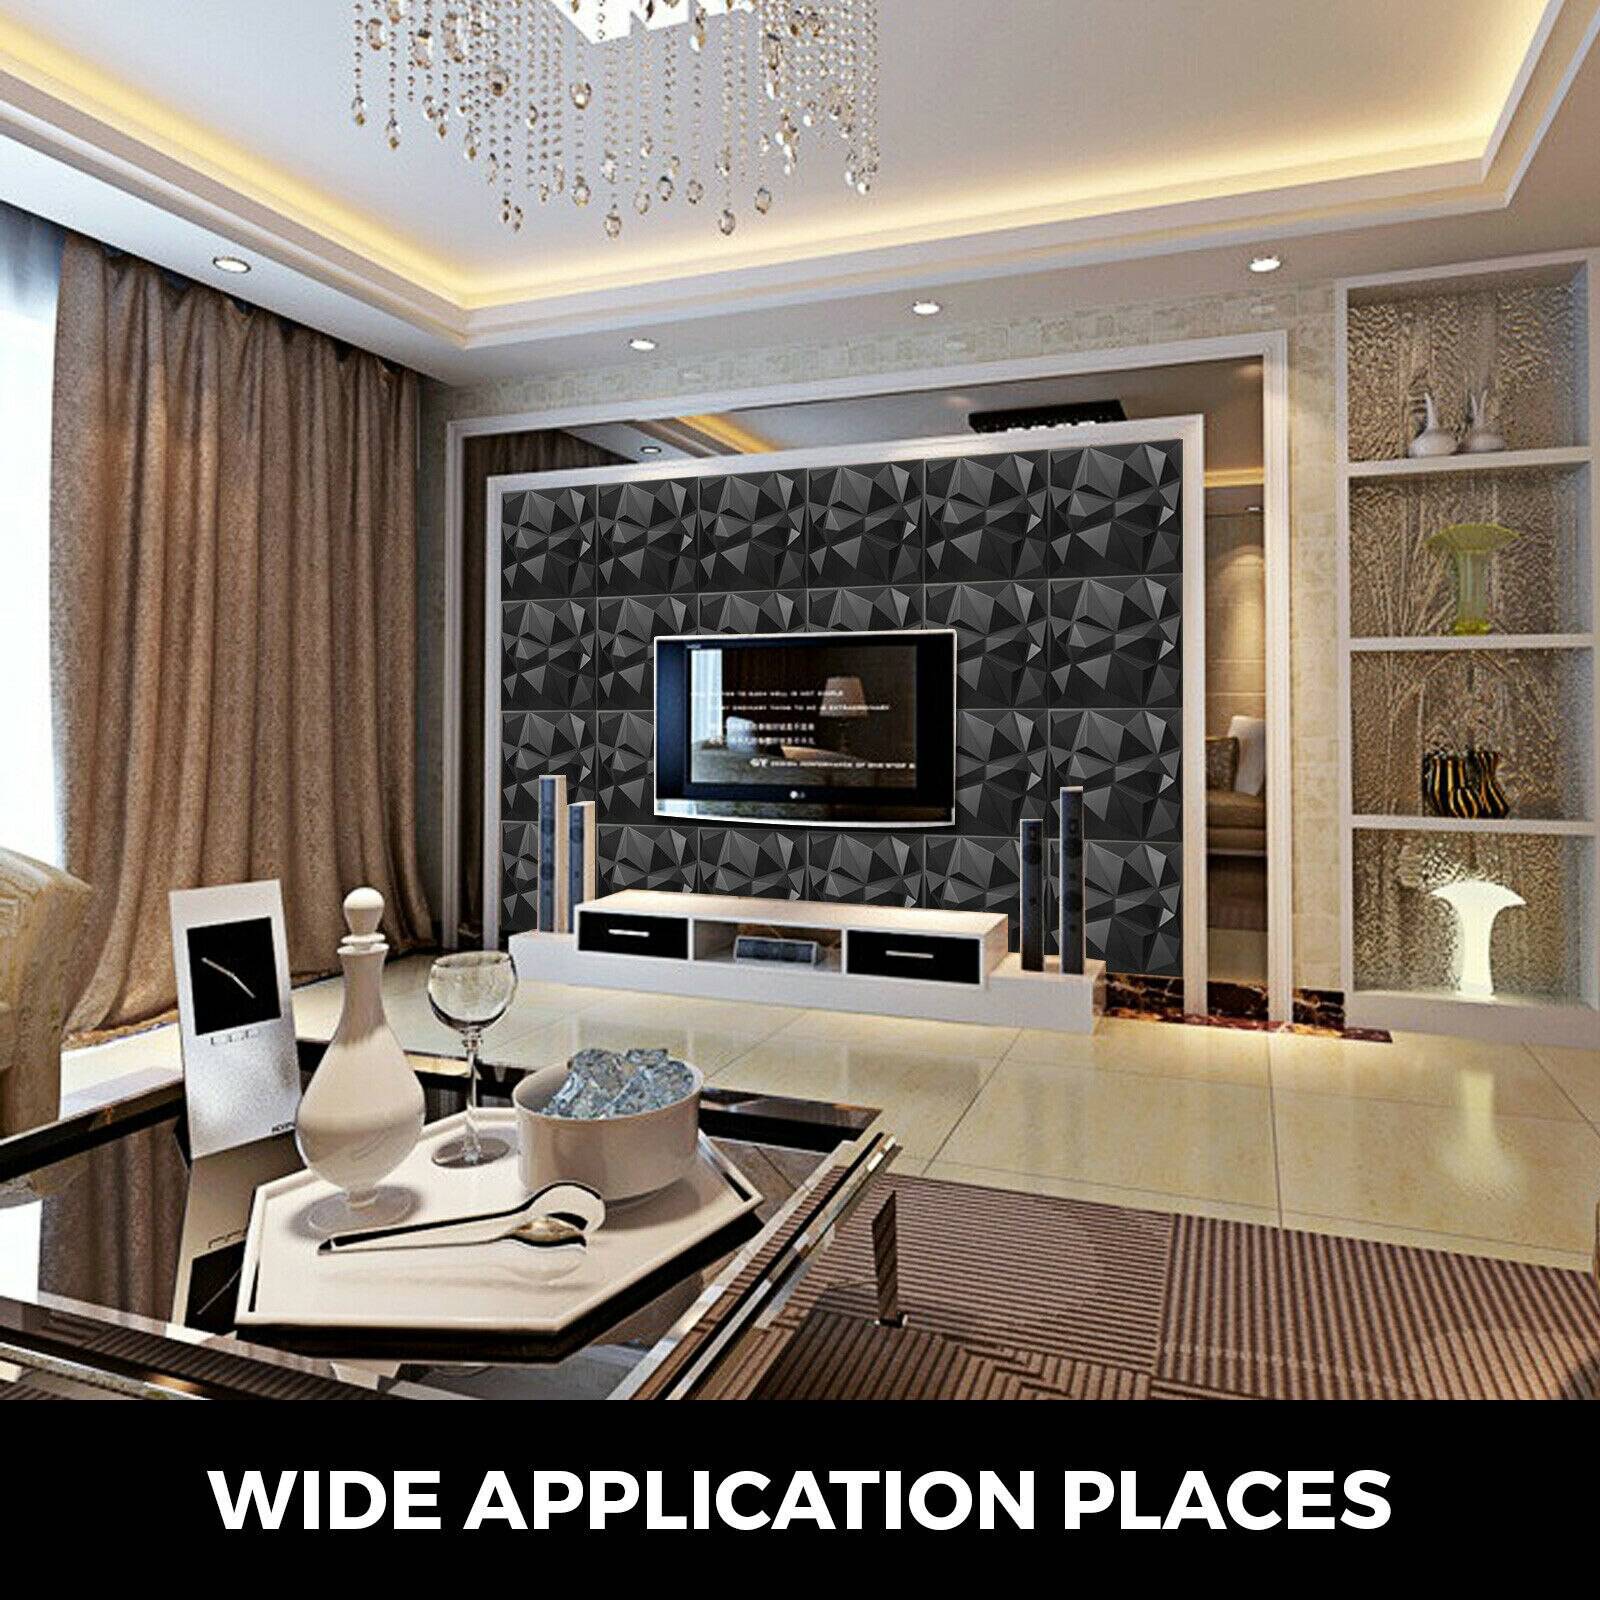 VEVOR 50x50cm 3D Wall Panel Self-Adhesive Tile White/Black 13Pcs Tiles PVC Wall Decorative Home Living Room Kitchen TV Backdrop Home Decor cb5feb1b7314637725a2e7: Black|White